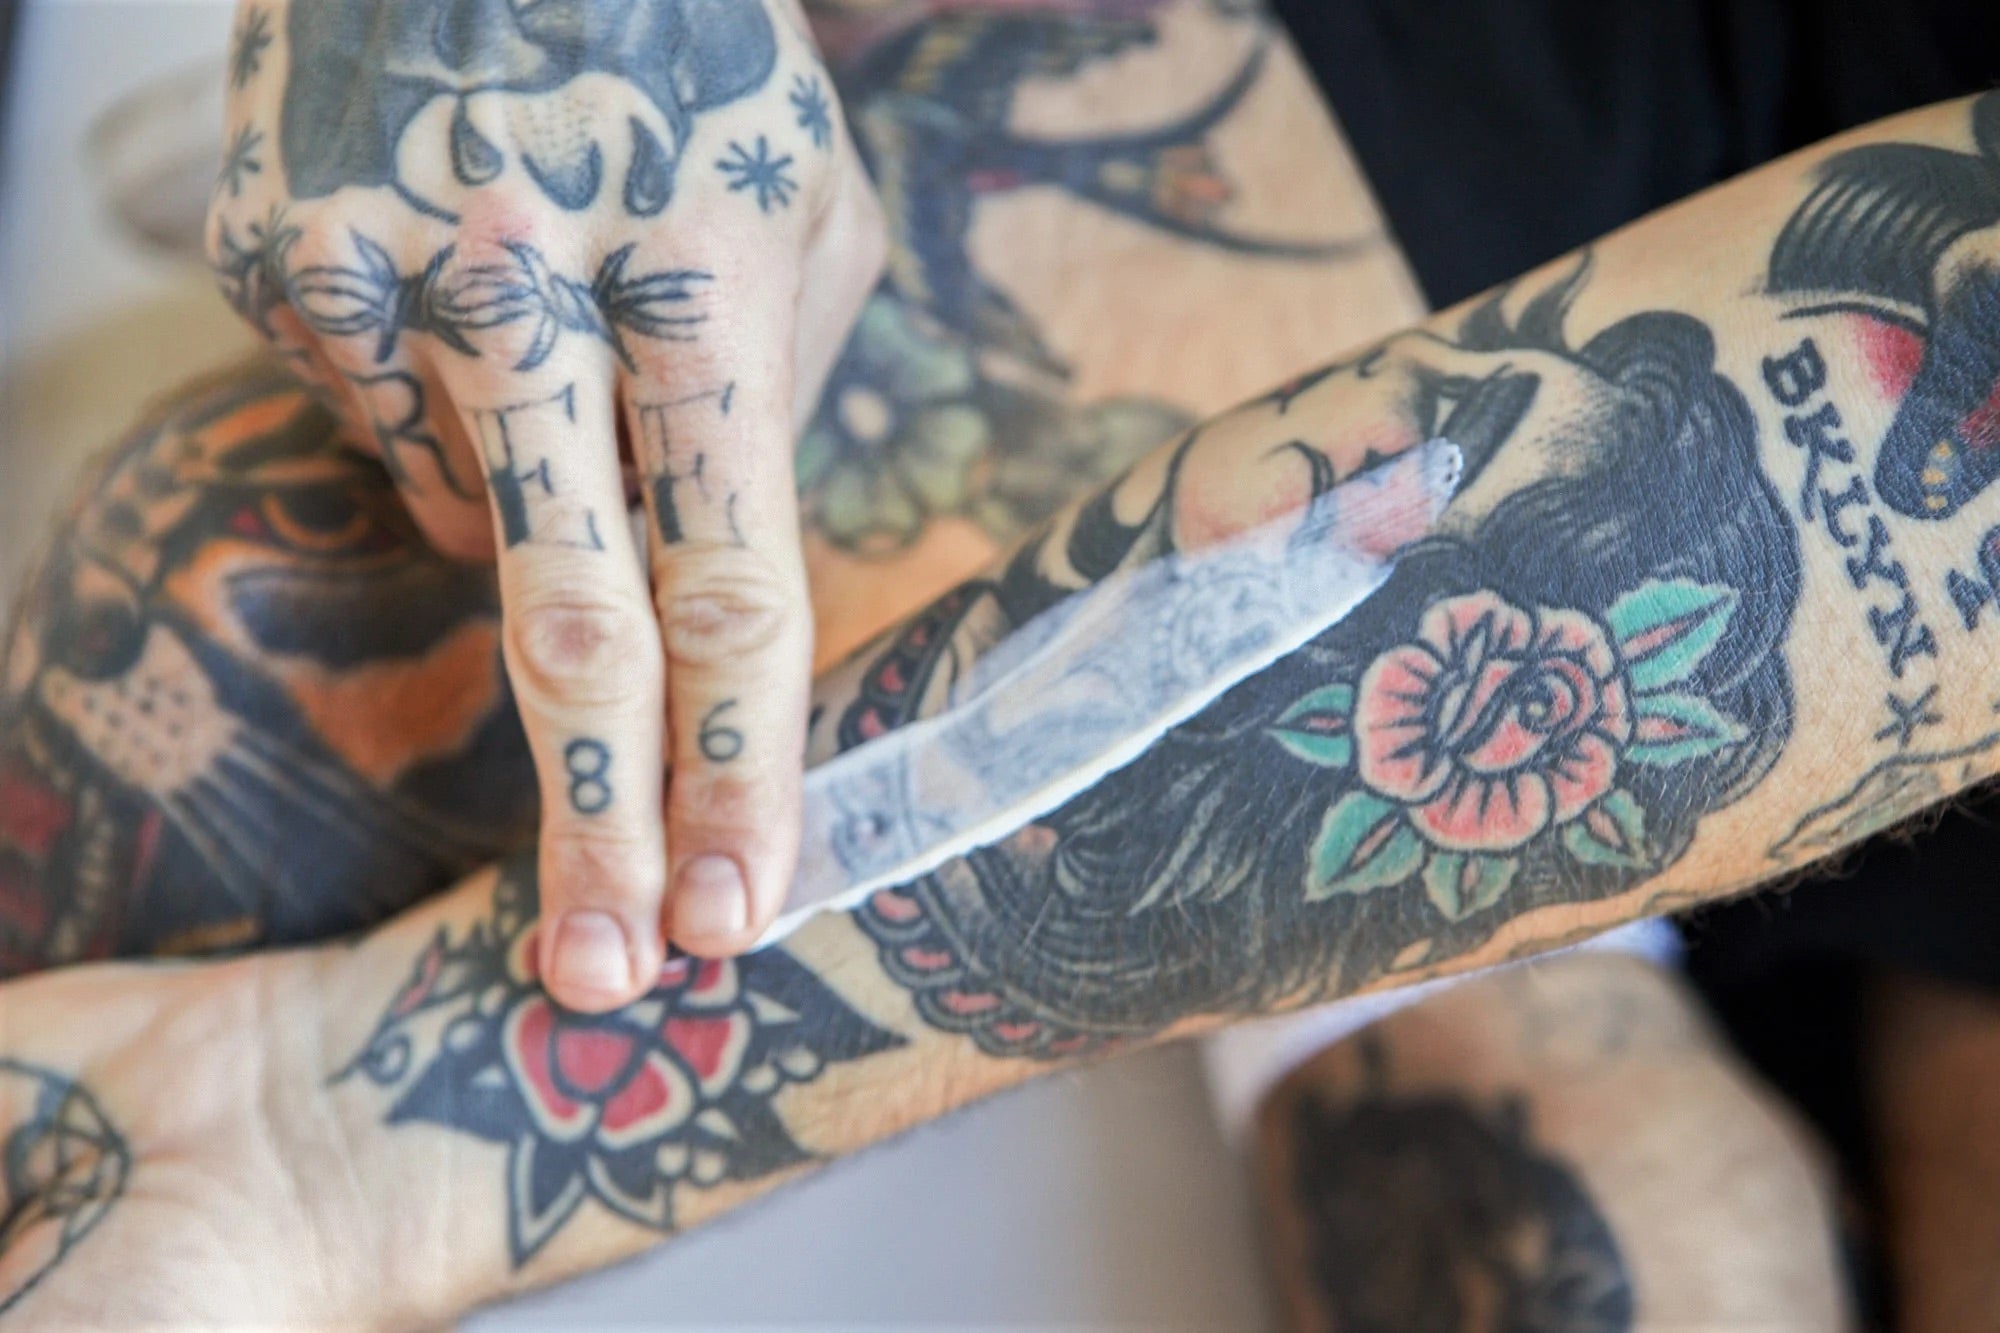 Best Tattoo Artists - 12 Tattoo Artists to Follow on Instagram